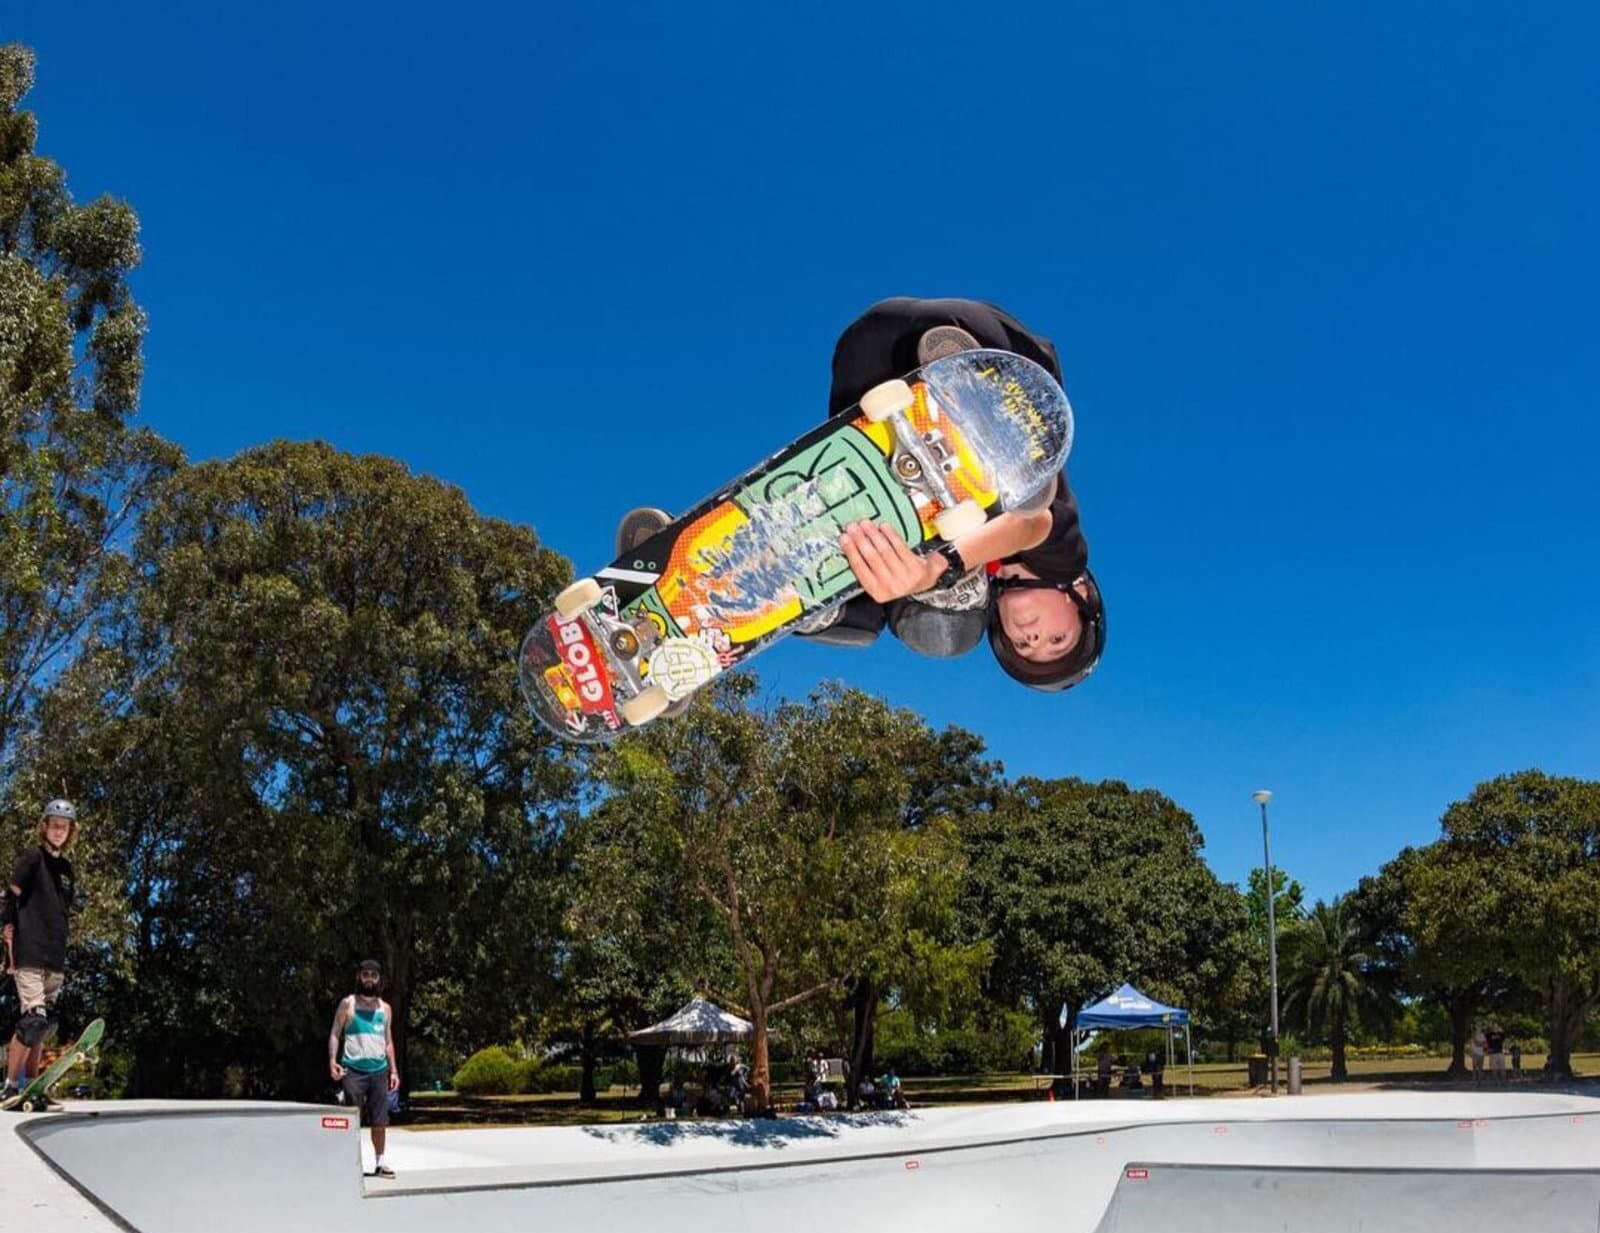 King of Concrete – Five Dock Skatepark